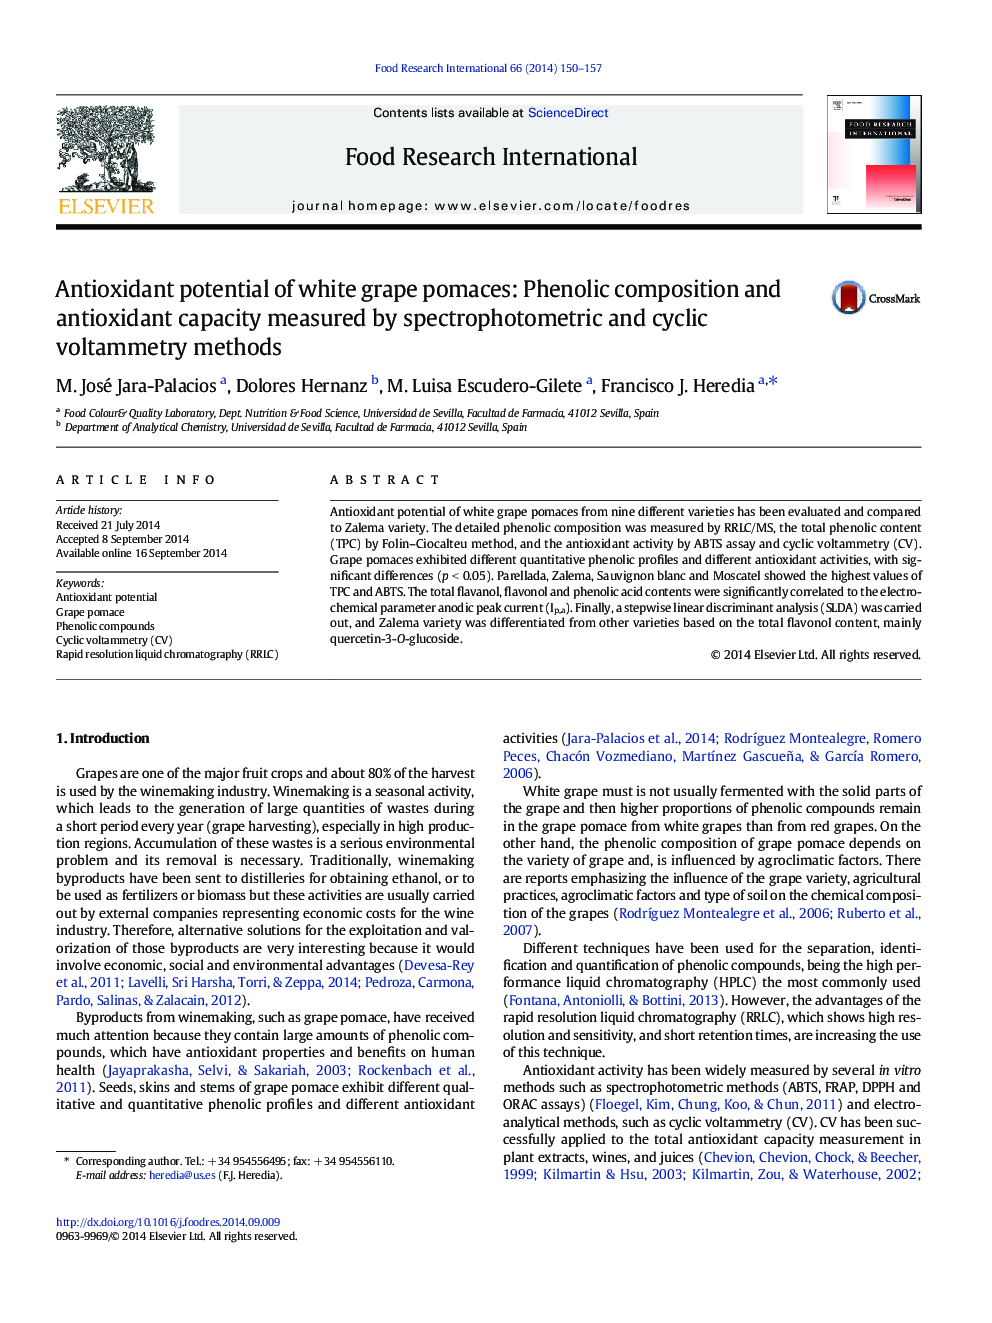 پتانسیل آنتی اکسیدانی اسانس انگور سفید: ترکیب فنل و ظرفیت آنتی اکسیدانی با استفاده از روش های اسپکتروفتومتریک و ولتامتریک چرخه ای 